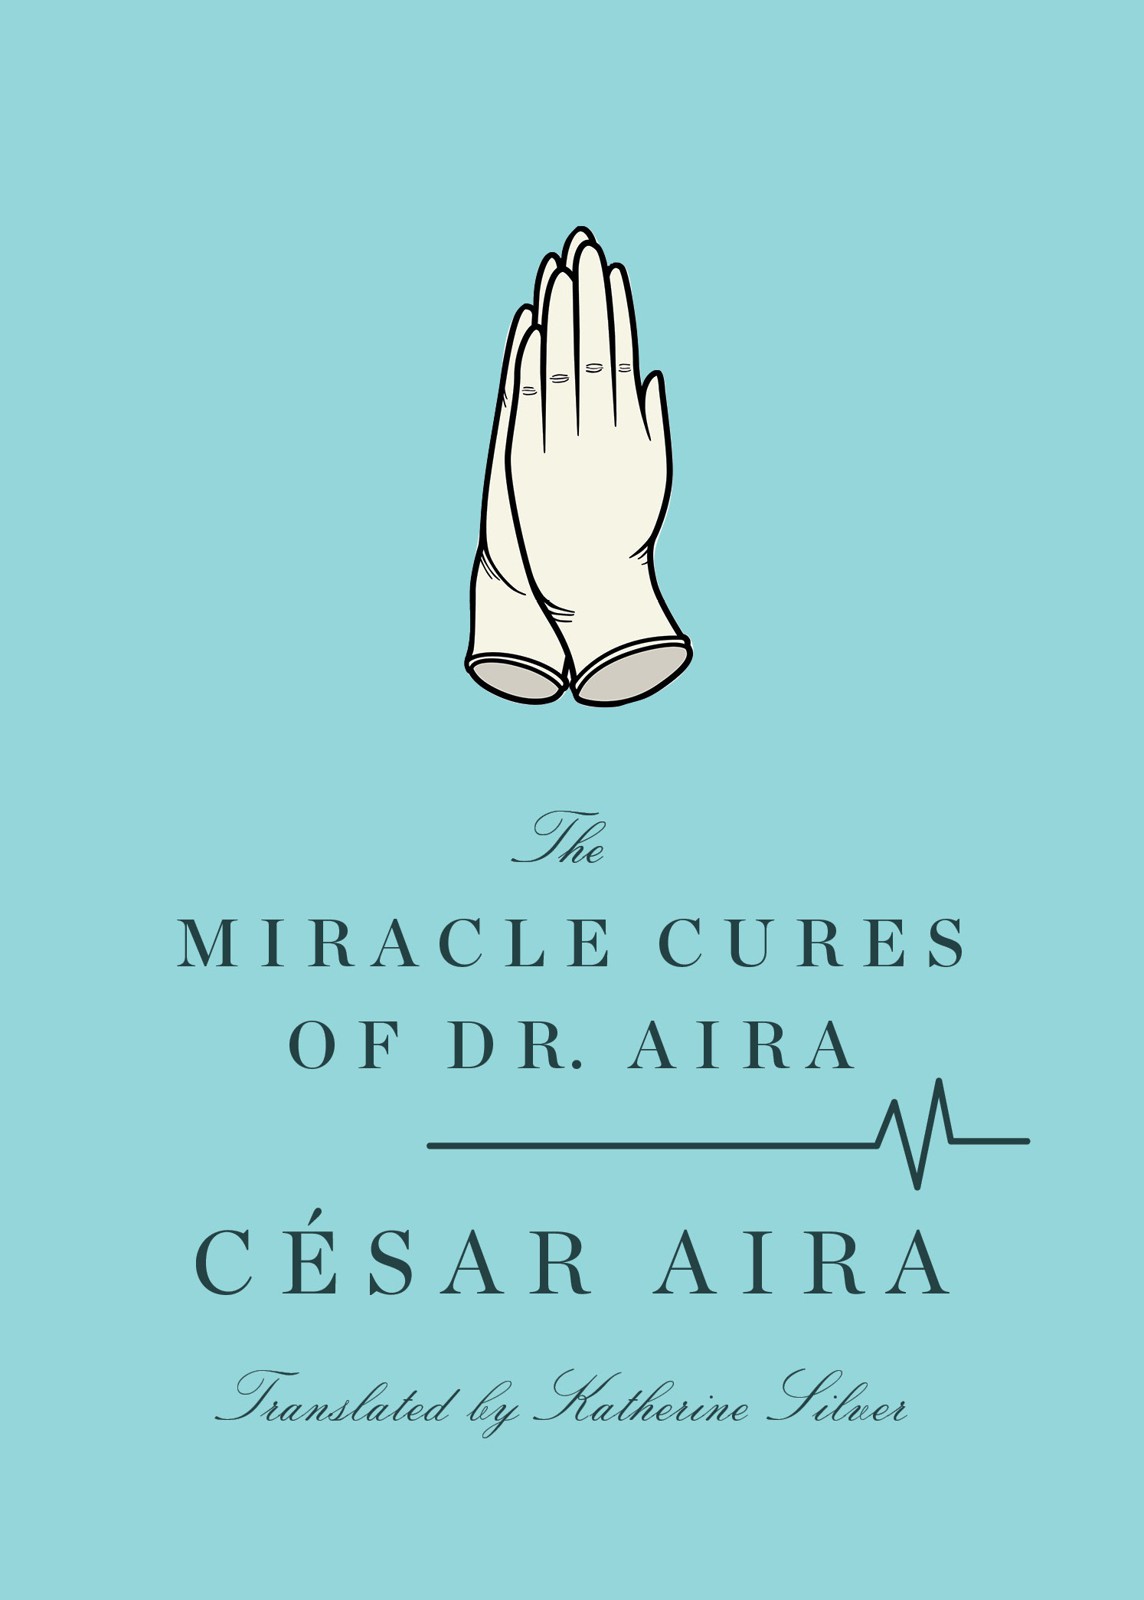 Aira César - The Miracle Cures of Dr. Aira скачать бесплатно